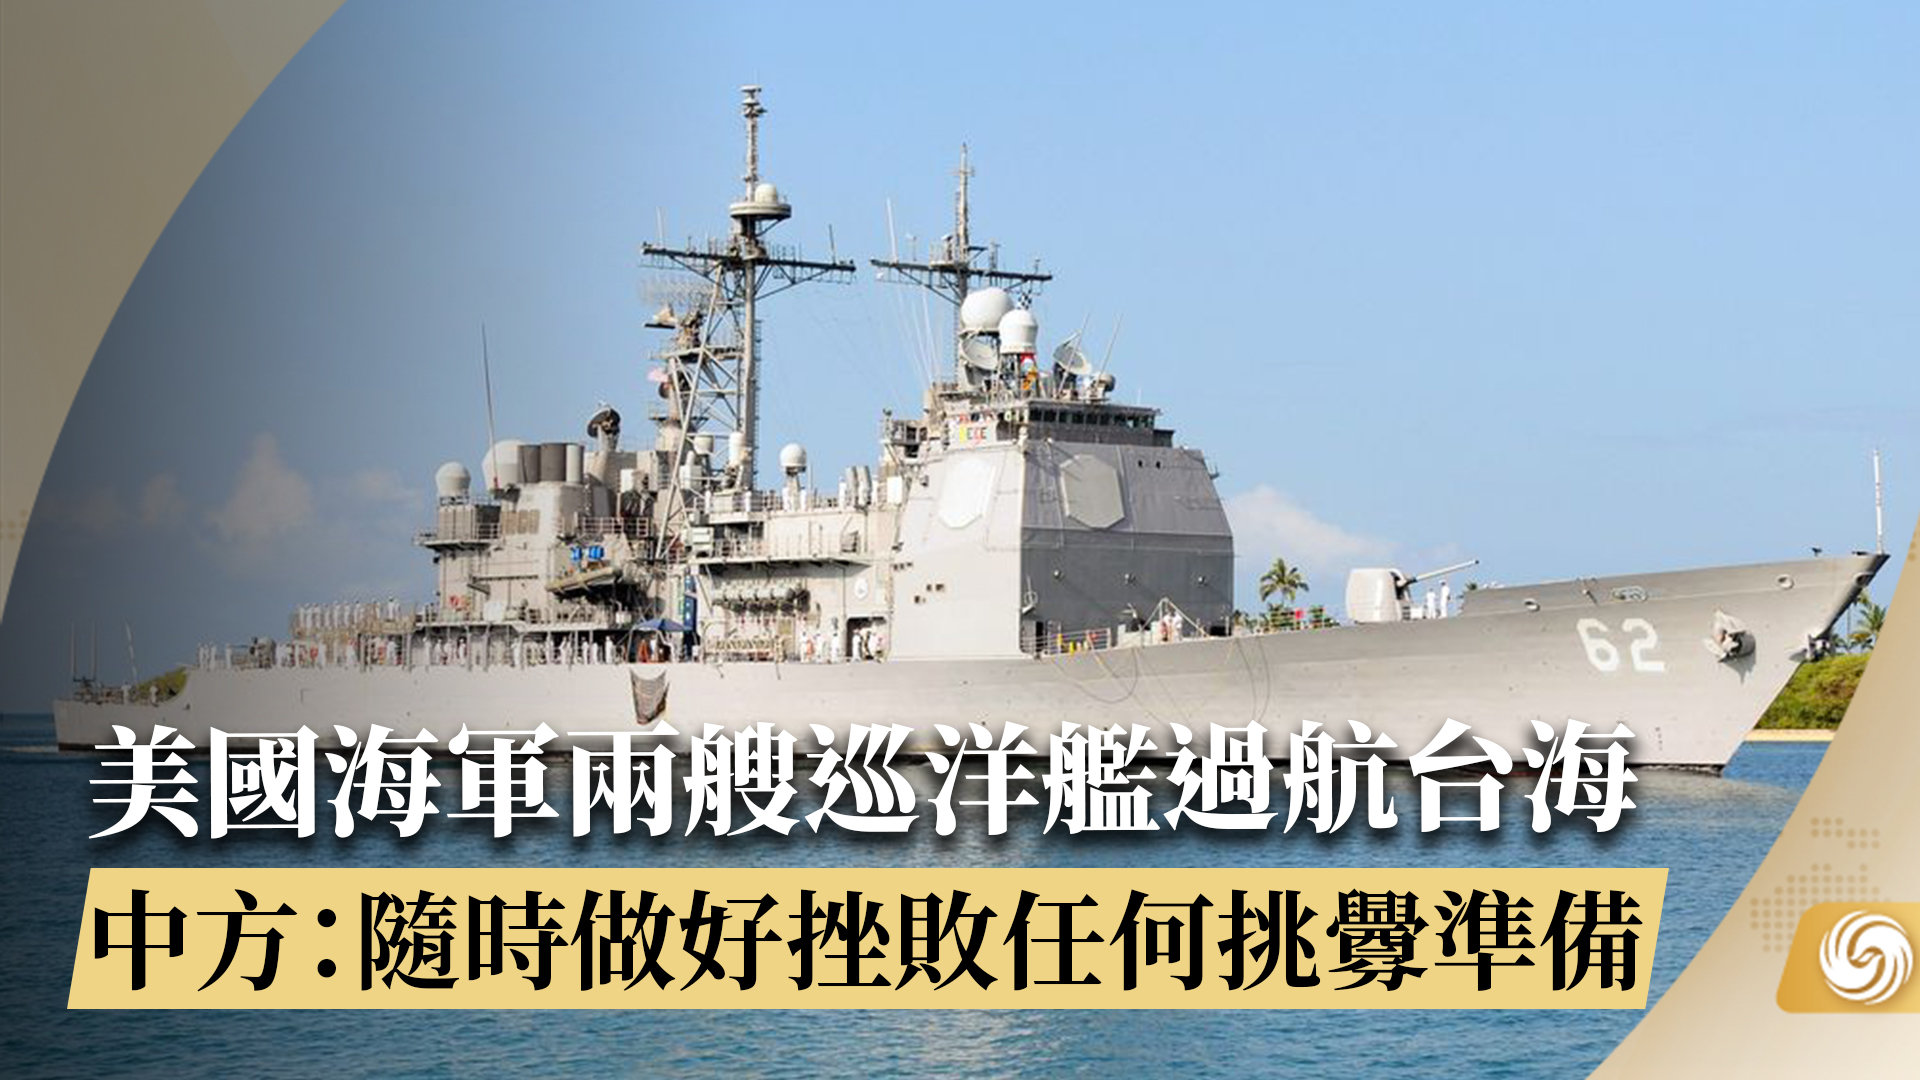 美国海军两艘巡洋舰过航台湾海峡 东部战区:一切动向尽在掌握